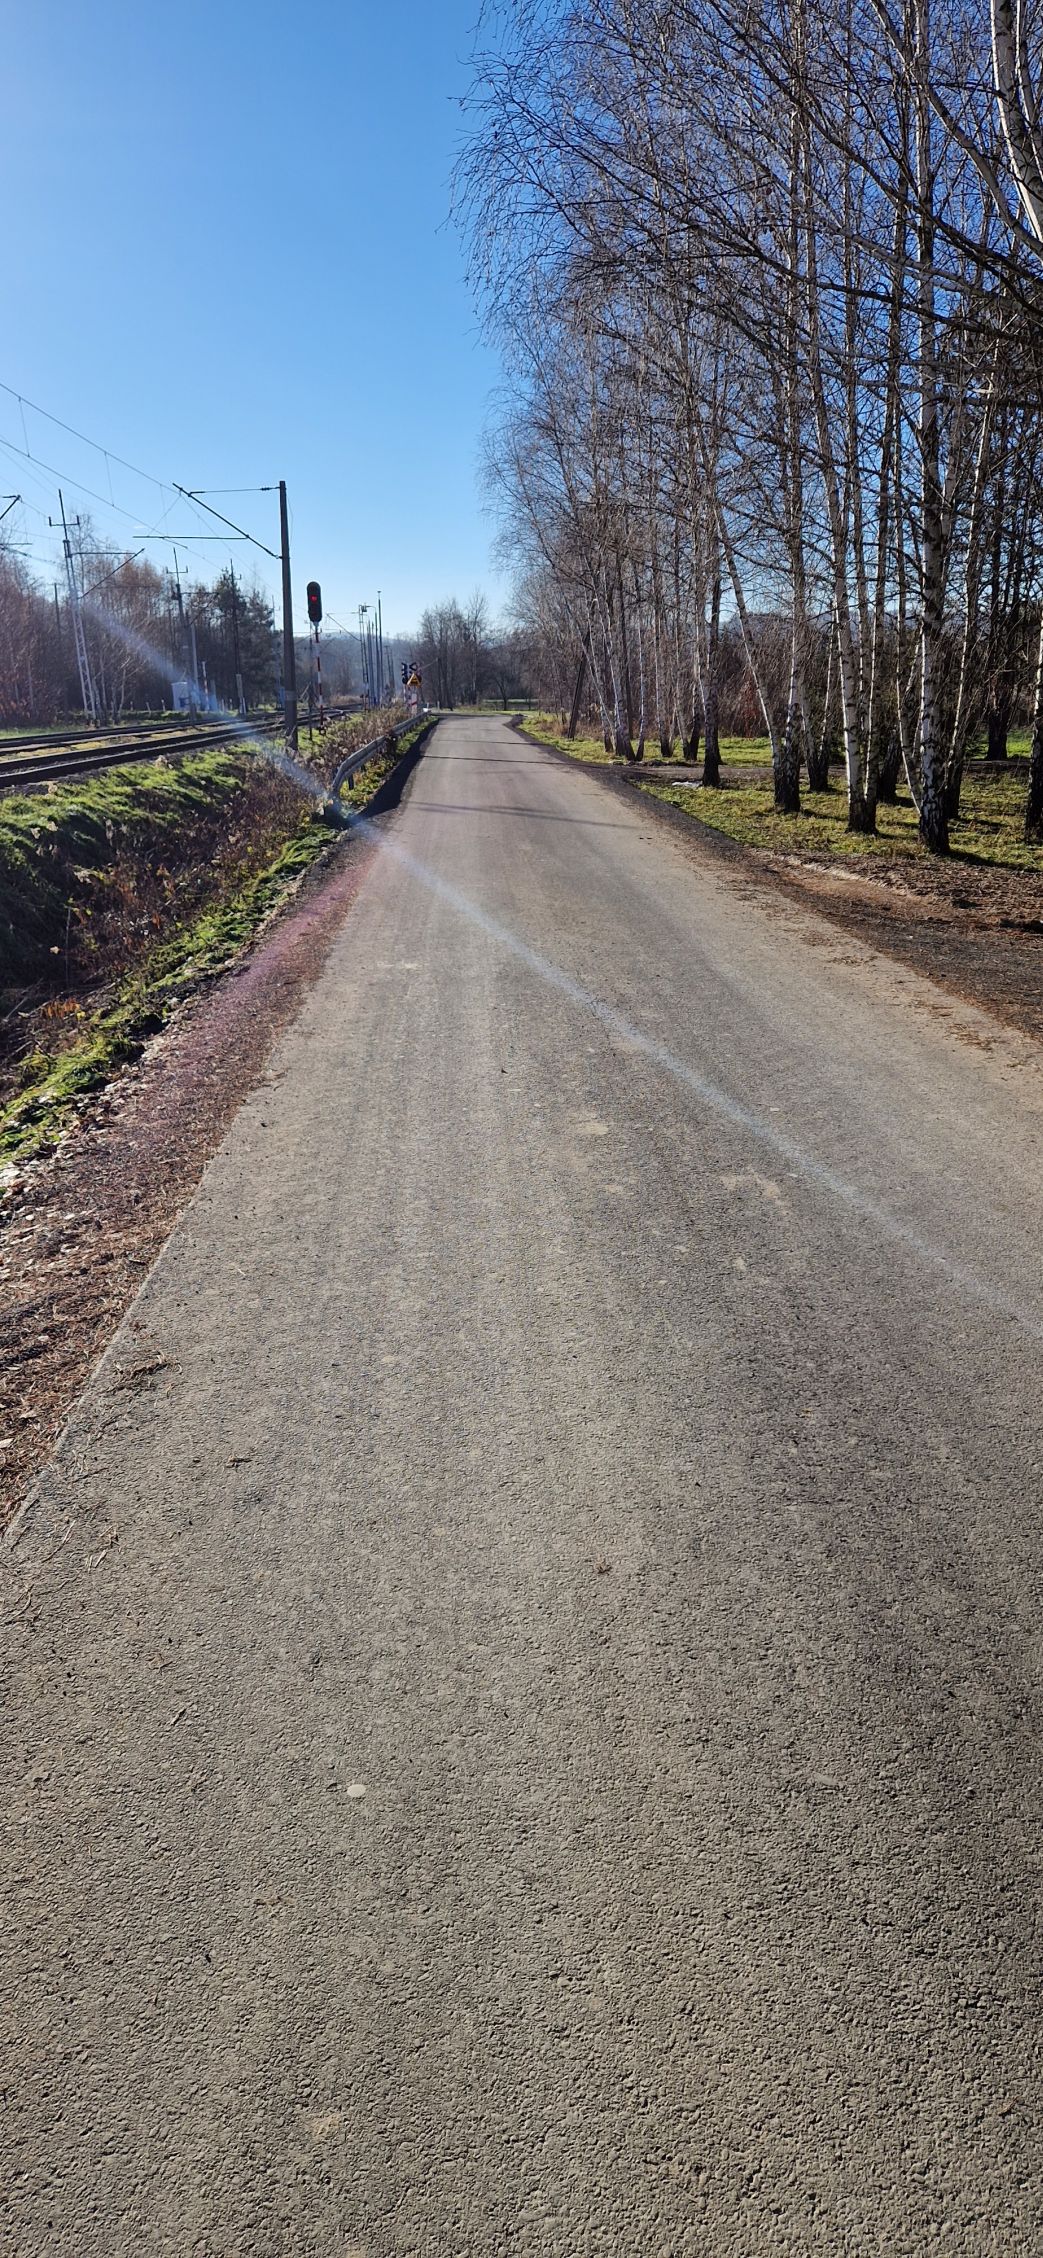 asfaltowy odcinek drogi wzdłuż torów, z prawej strony rosną drzewa